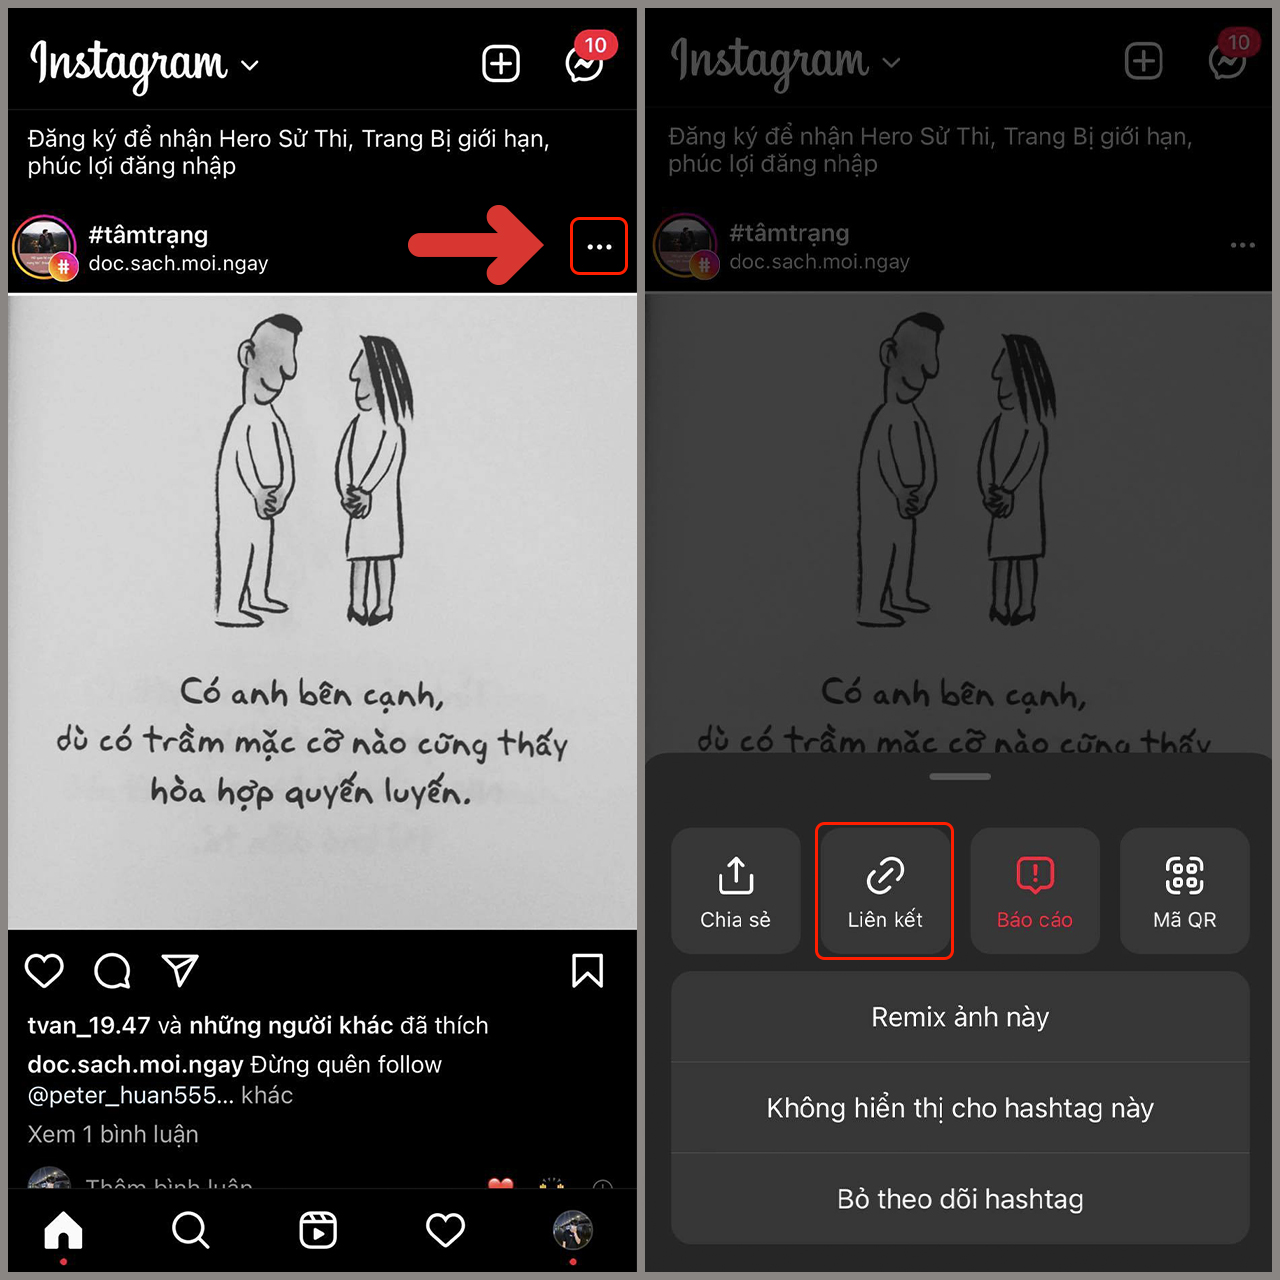 Cách tải ảnh instagram về iPhone đơn giản giúp bạn thoải mái lưu lại những bức ảnh ưng ý